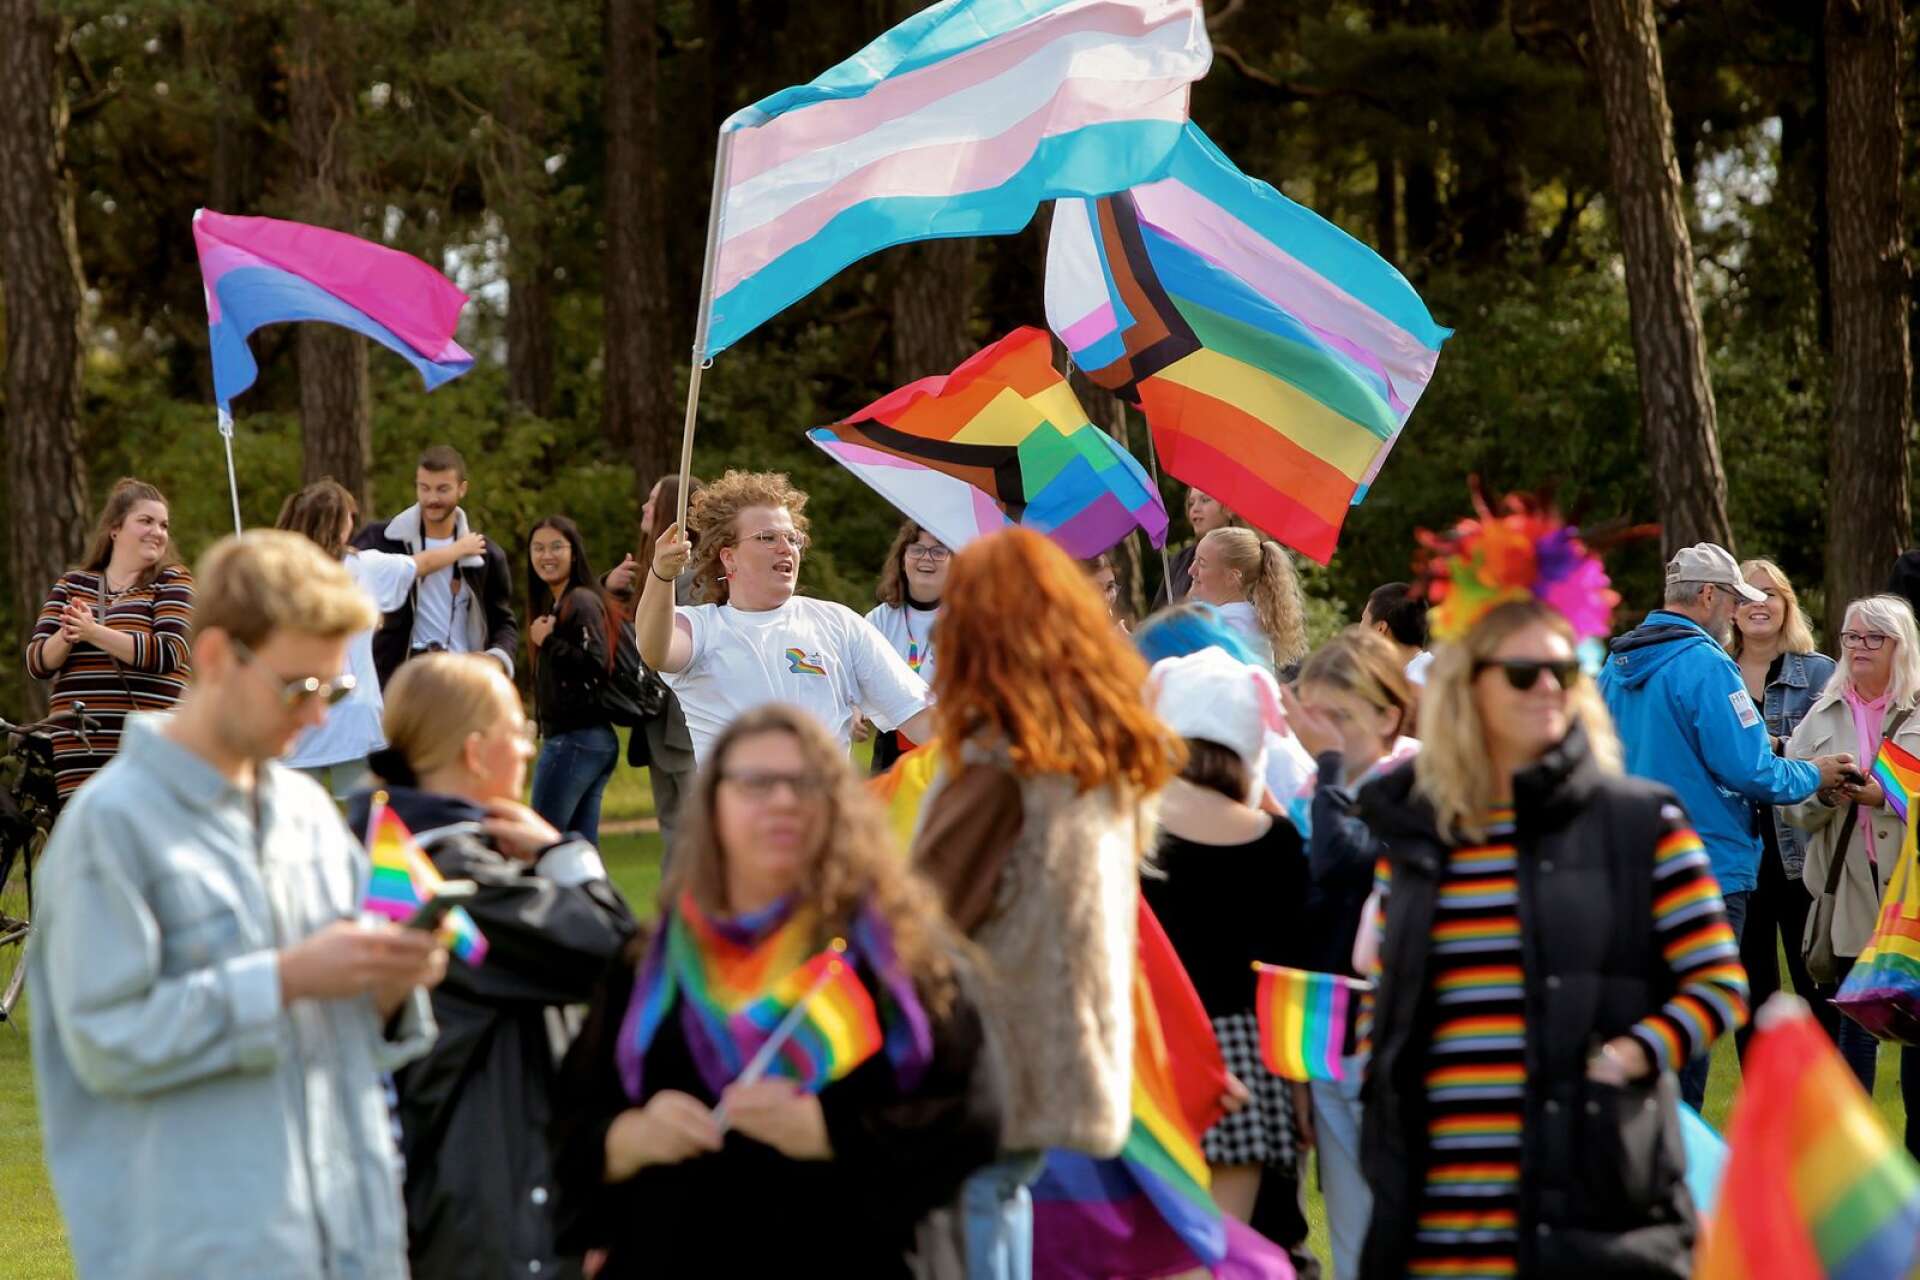 Företrädare för Moderata ungdomsförbundet i Lidköping är besvikna på fjolårets Prideparad då de enligt debattartikeln utsattes för glåpord. &quot;En parad av kärlek och gemenskap förvandlades till en parad av hat&quot;, skriver de.